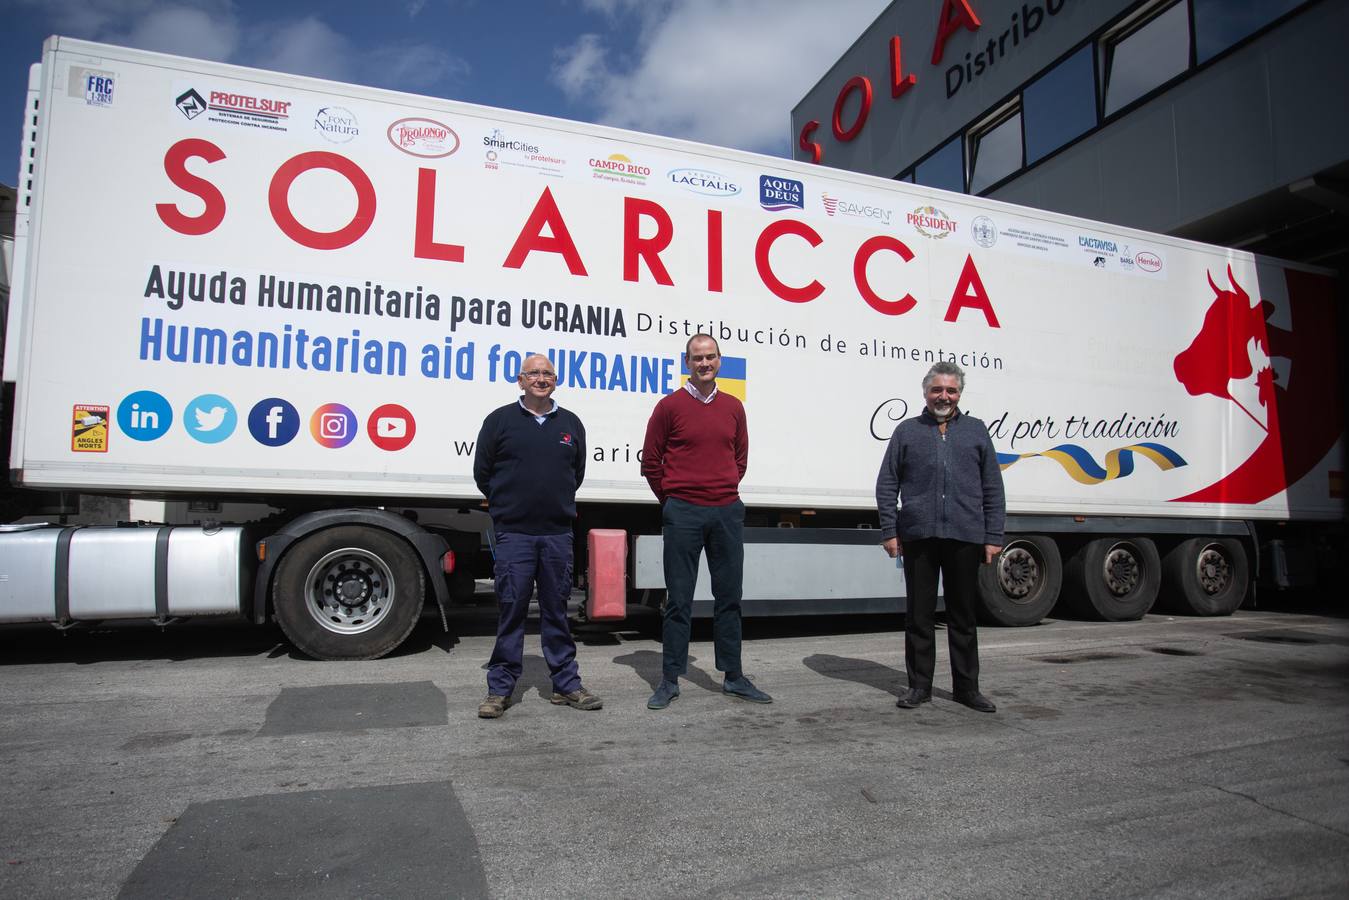 Tráiler de la empresa Sola Ricca con ayuda humanitaria para Ucrania. VANESSA GÓMEZ